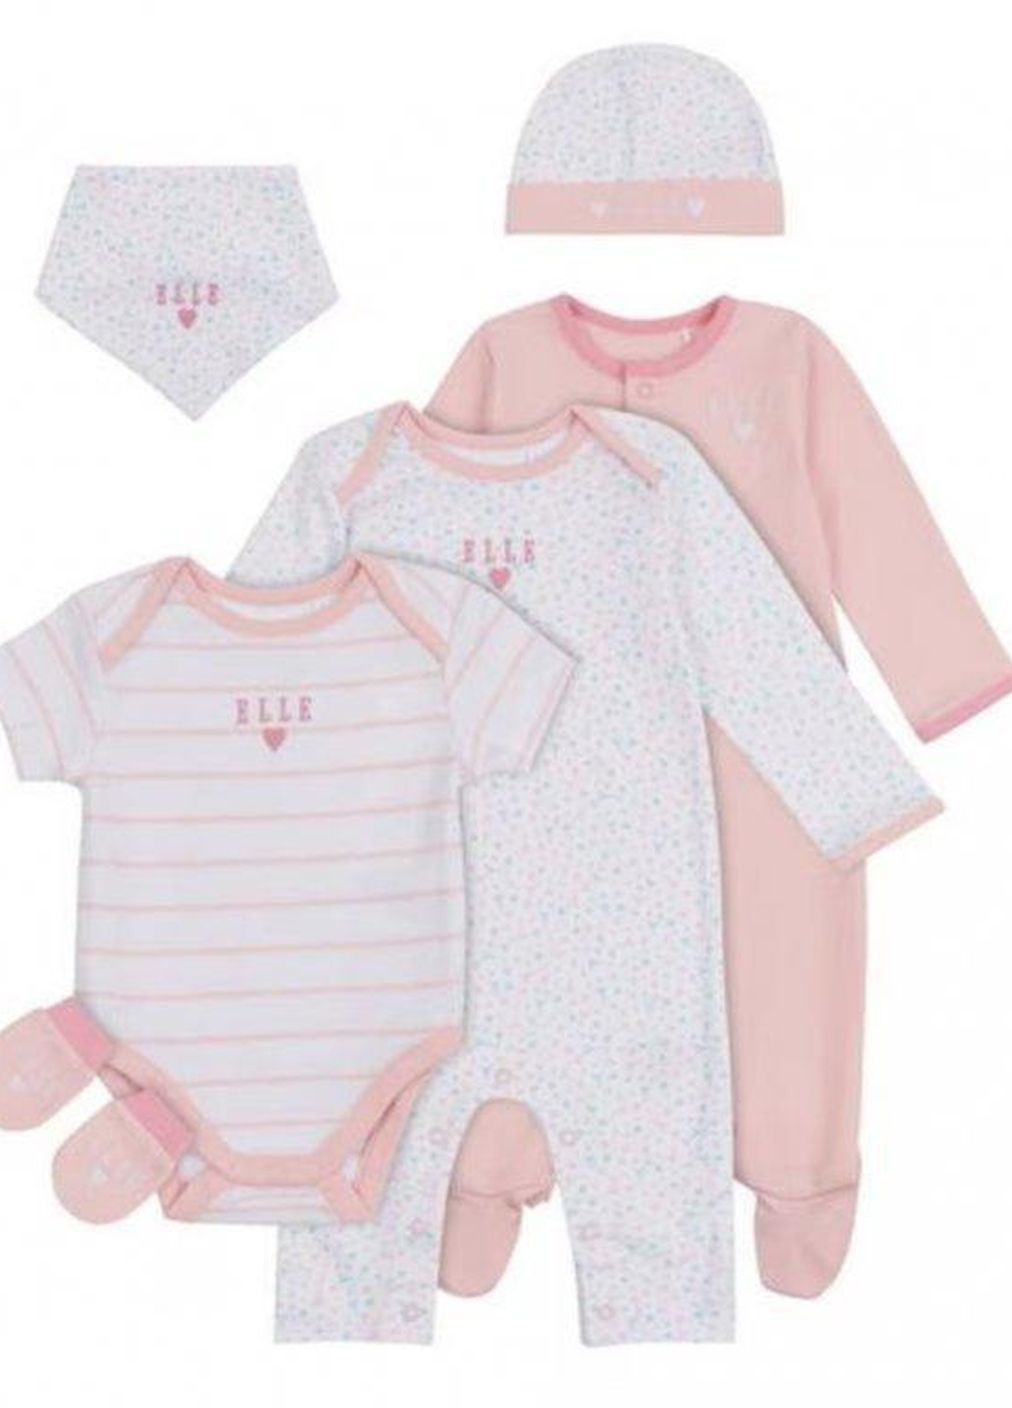 Розовый набор 6шт для новорожденной девочки 0-6 мес (рост 56-68 см). оригинал Elle